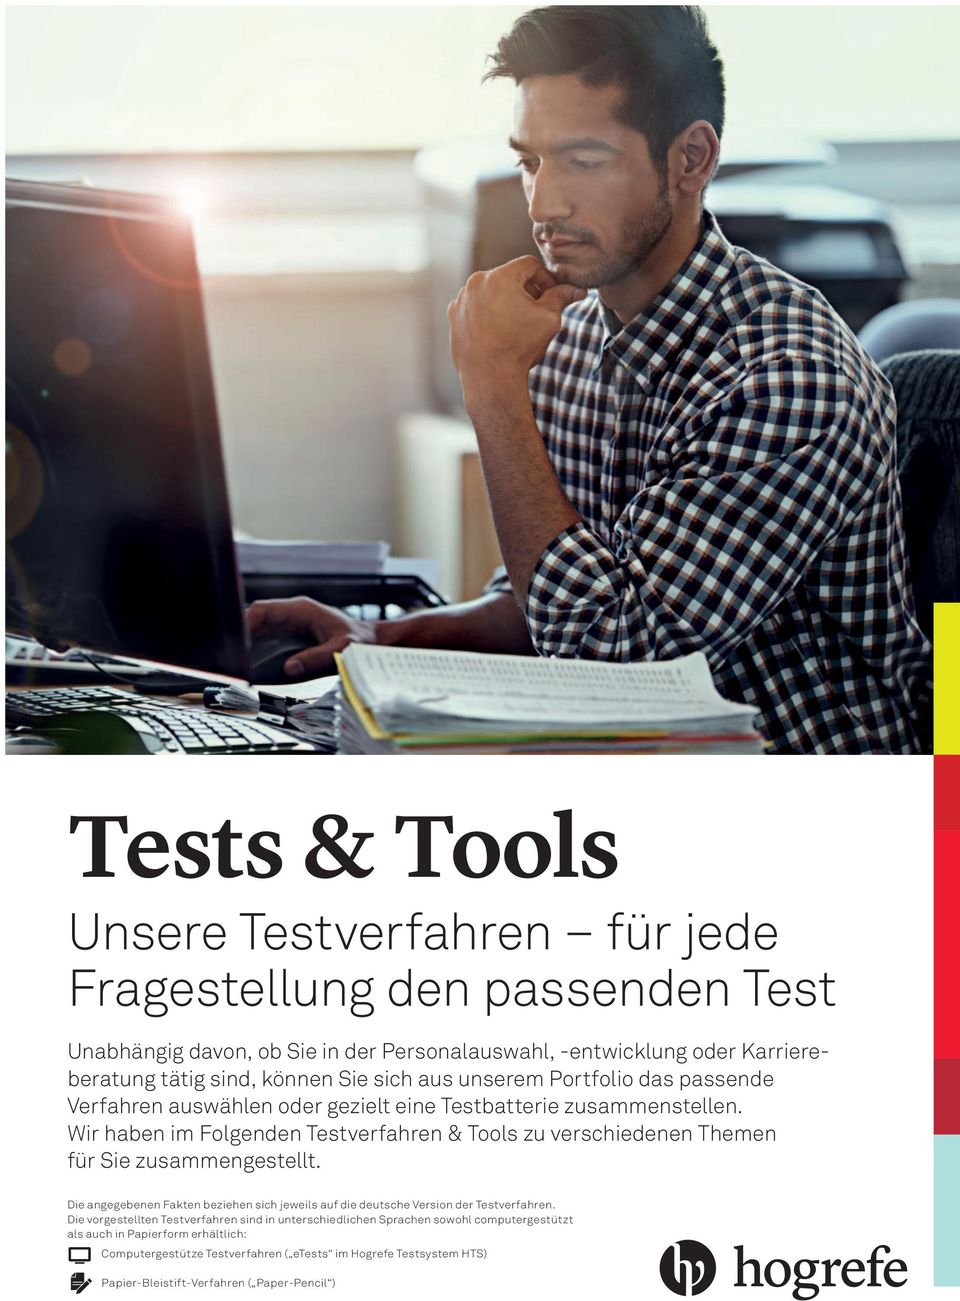 Wir haben im Folgenden Testverfahren & Tools zu verschiedenen Themen für Sie zusammengestellt. Die angegebenen Fakten beziehen sich jeweils auf die deutsche Version der Testverfahren.